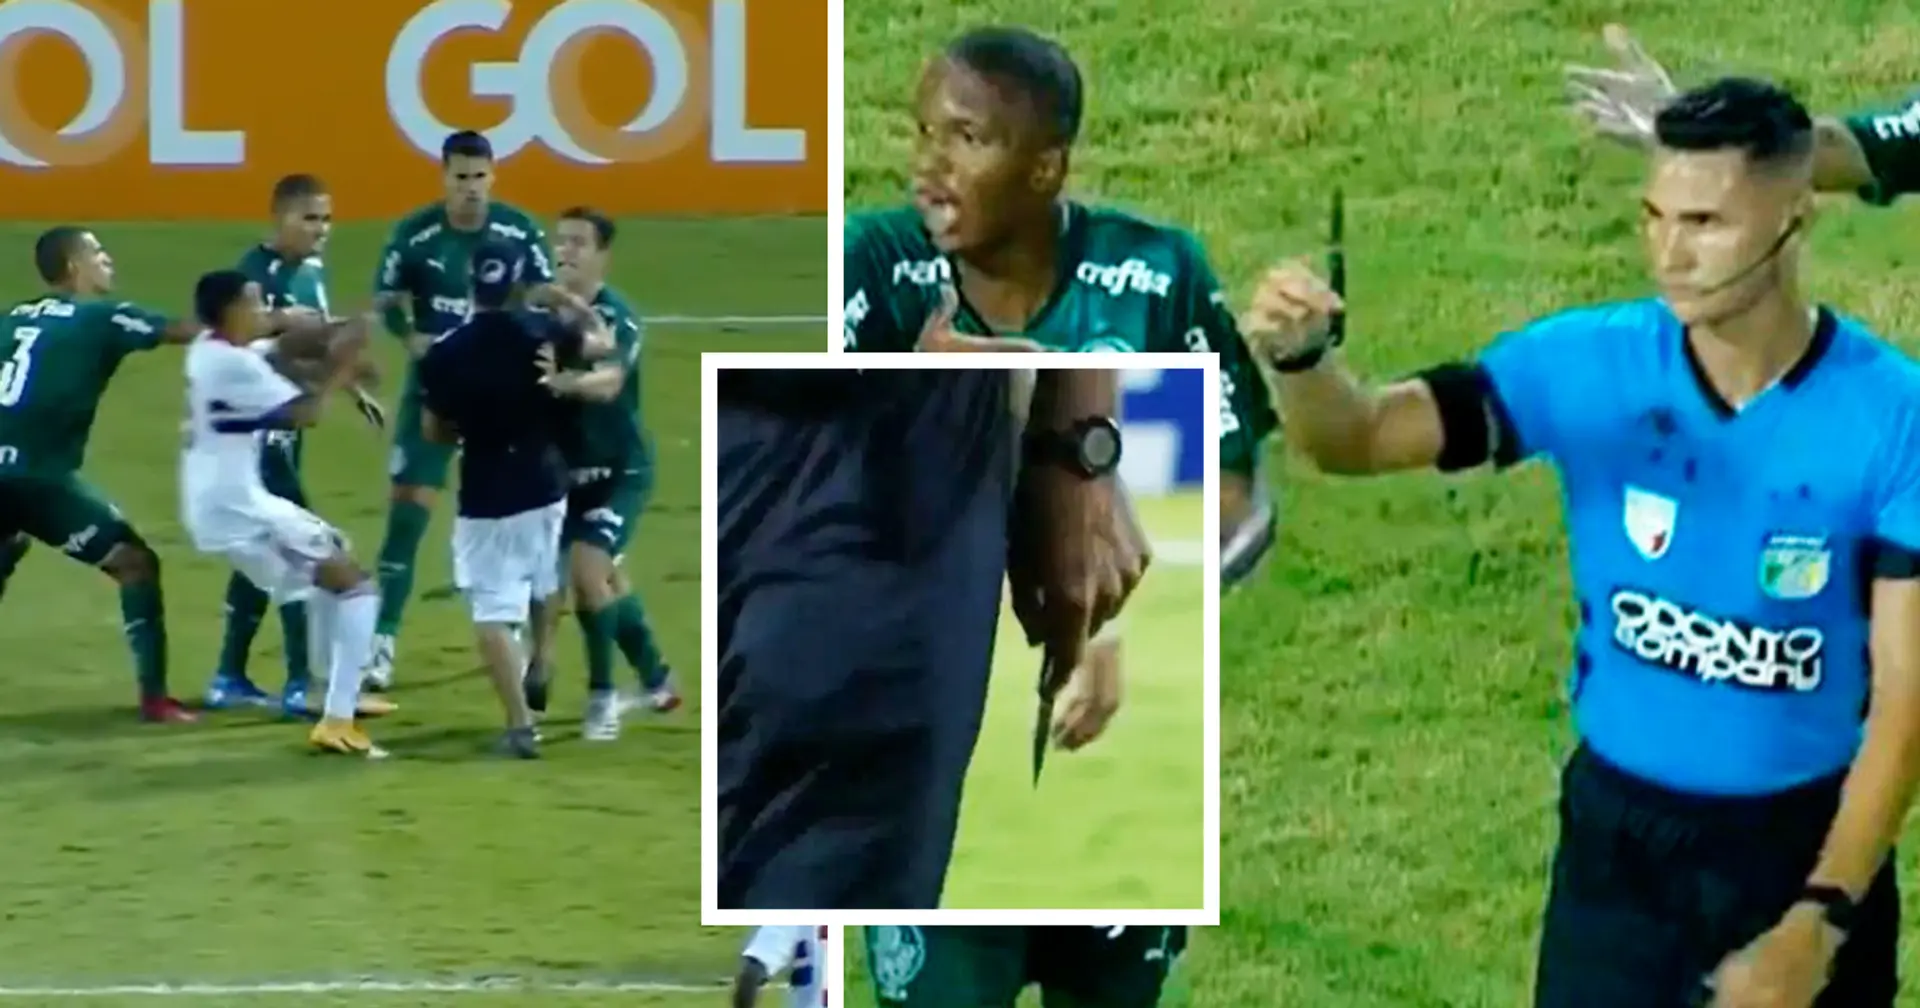 Wahnsinn in Brasilien: San-Paulo-Fan wirft Messer während U20-Halbfinale